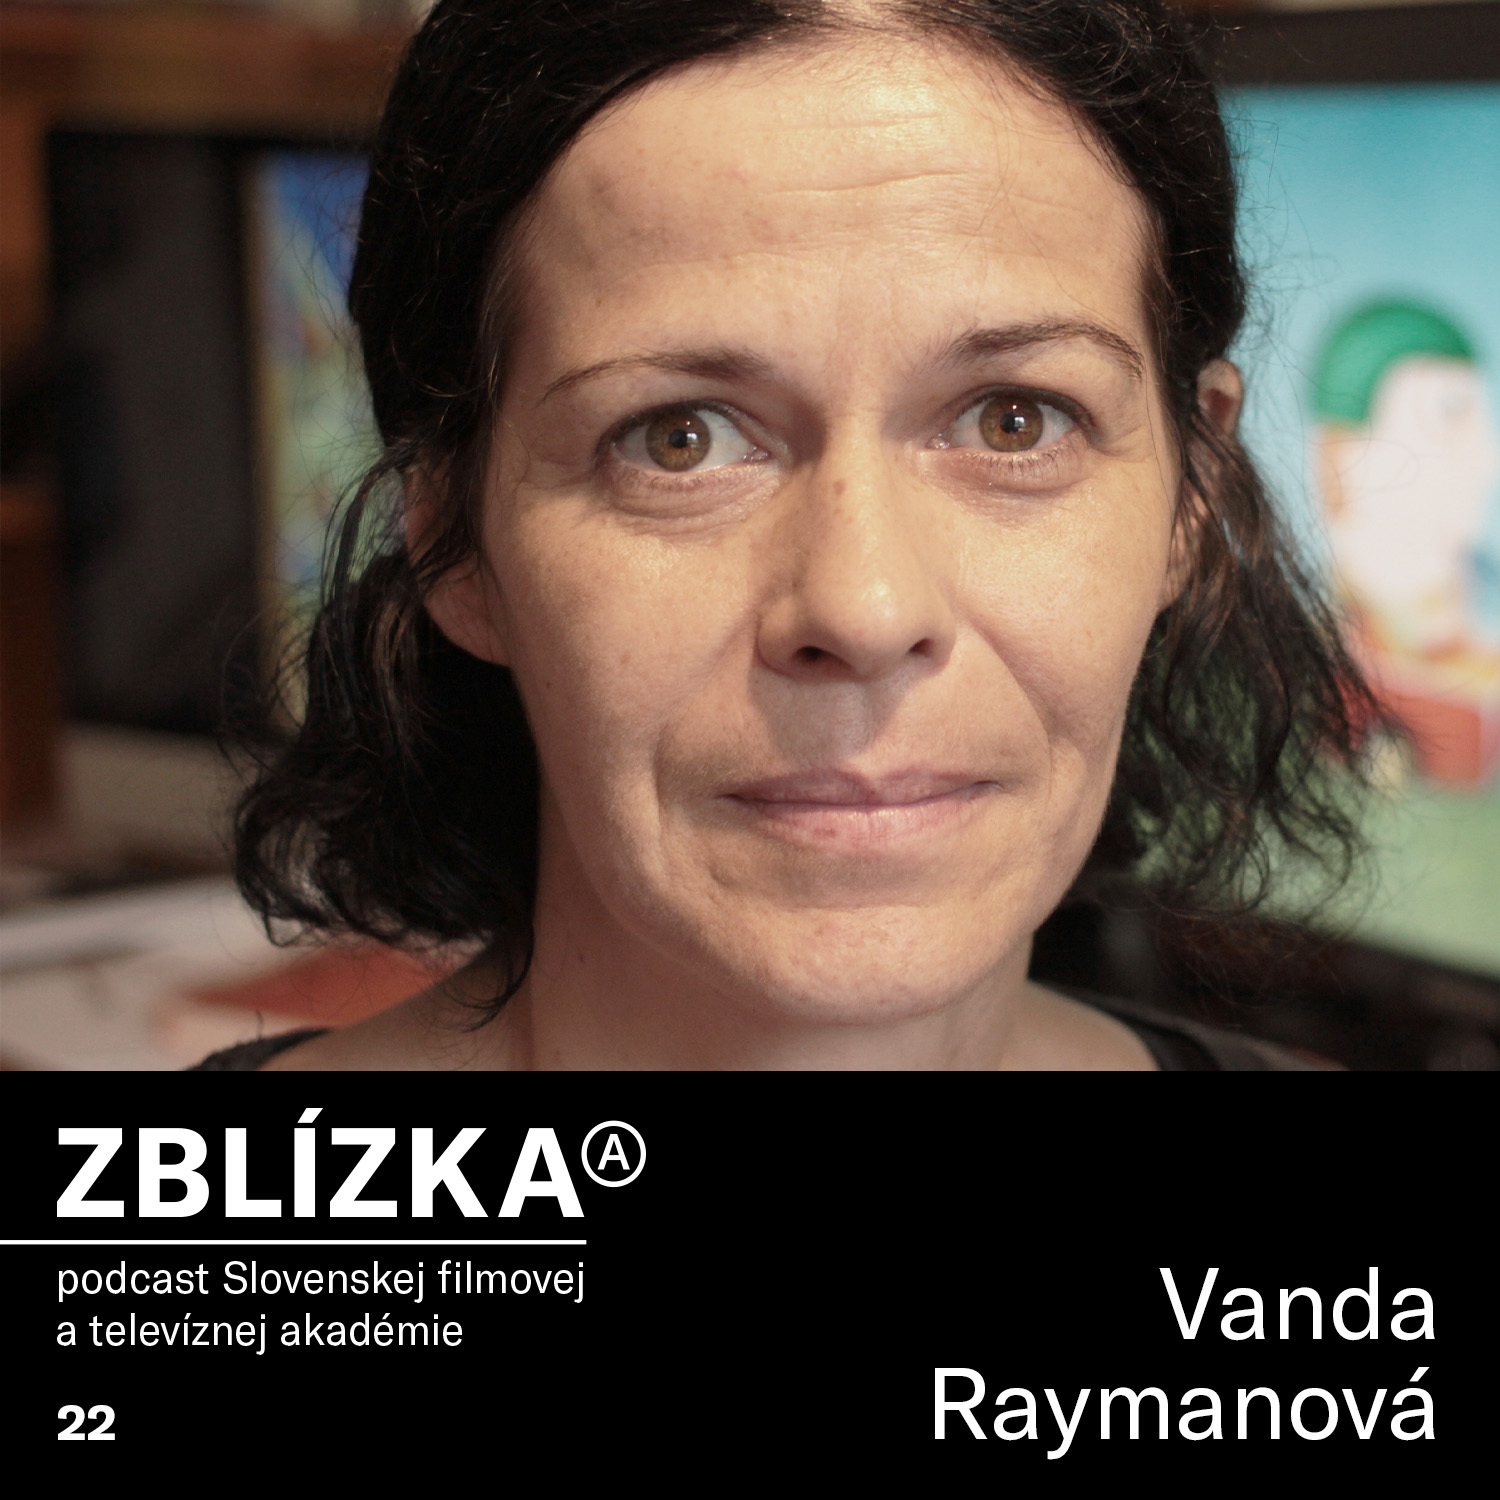 Vanda Raýmanová: Deťom rozumiem viac než dospelým